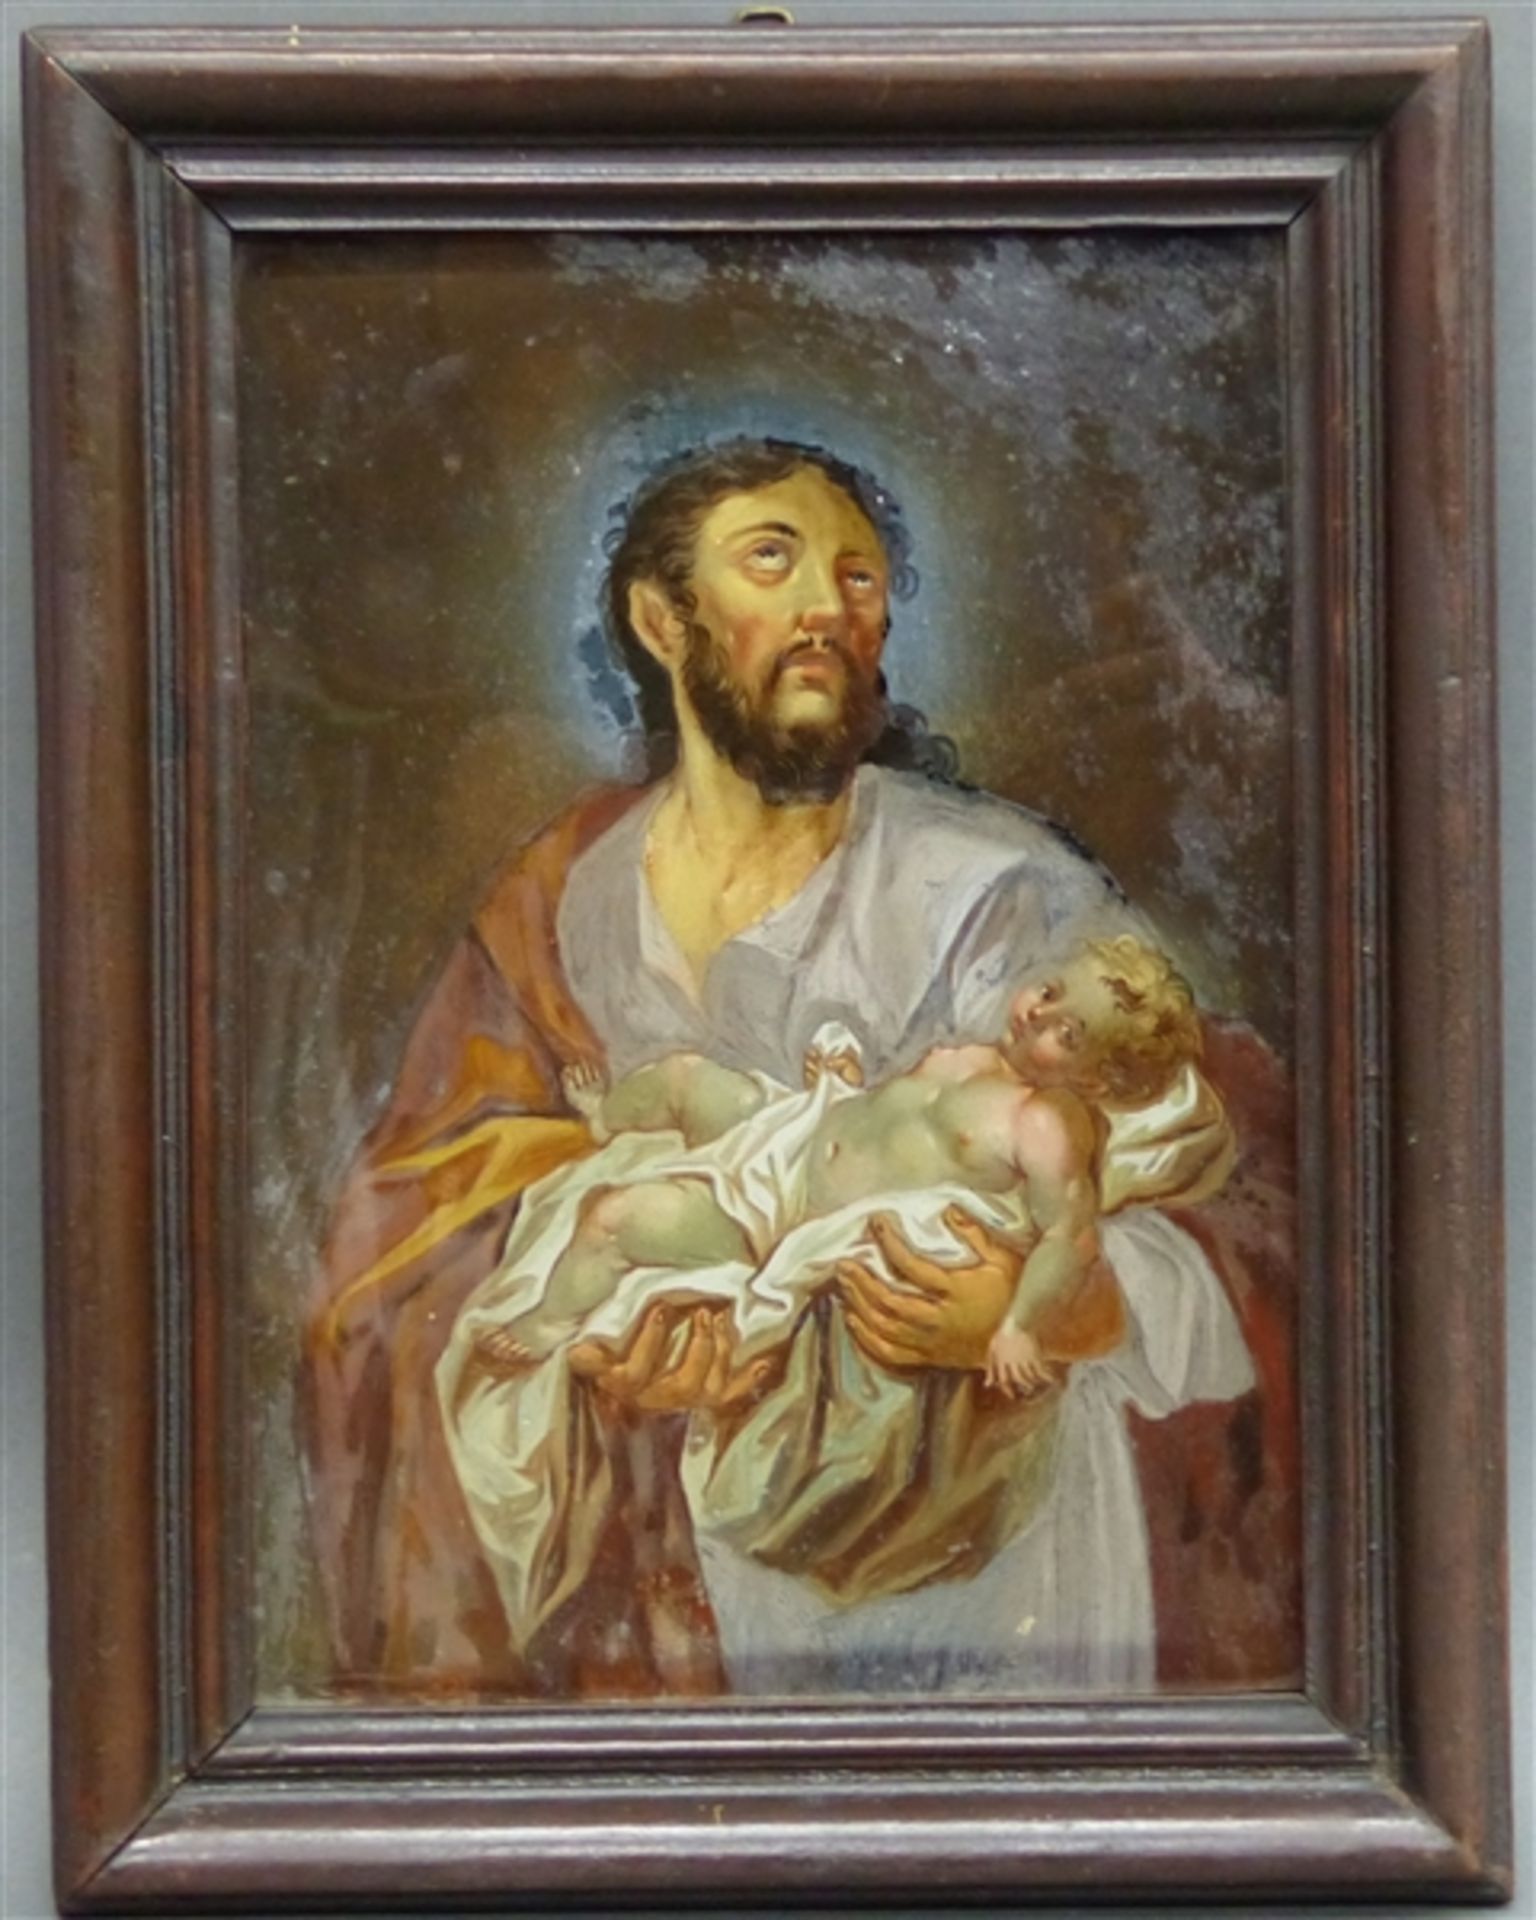 Hinterglasbild Süddeutschland, um 1800, Hl. Joseph mit Jesuskind, teilweise beschädigt, 27 x 19